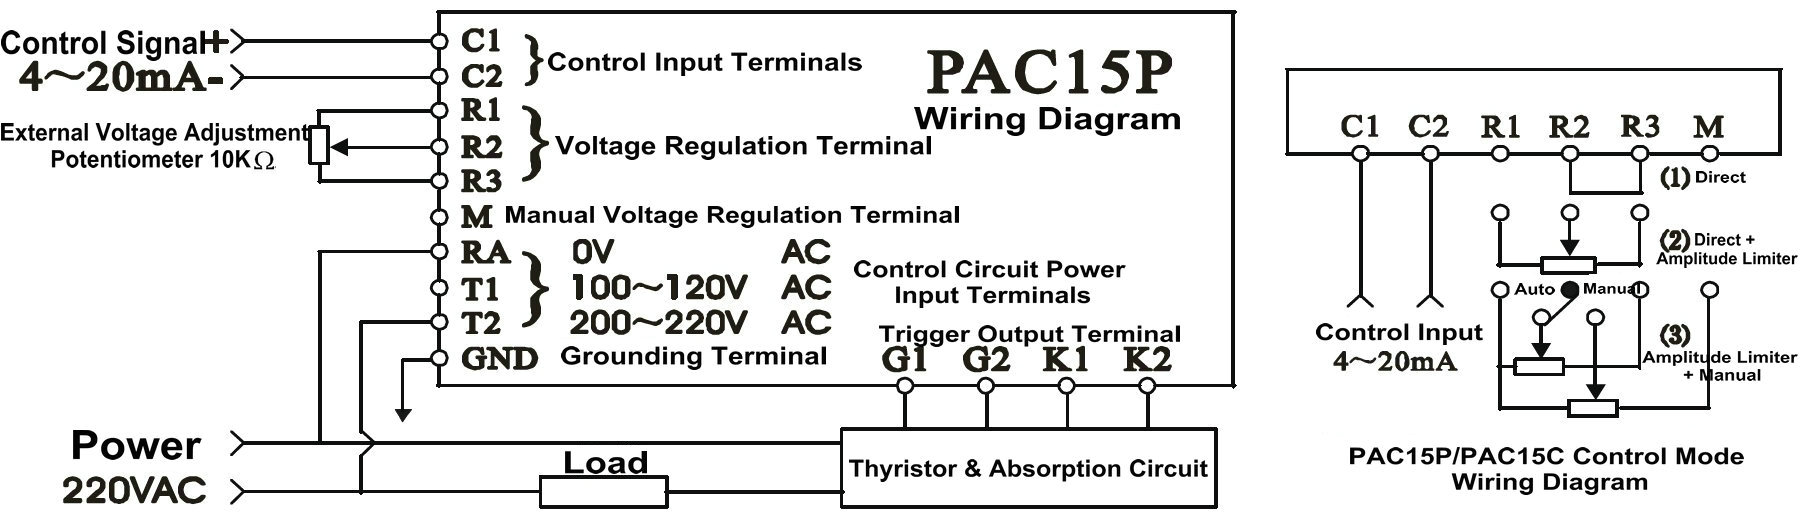 PAC15 Wiring Diagram